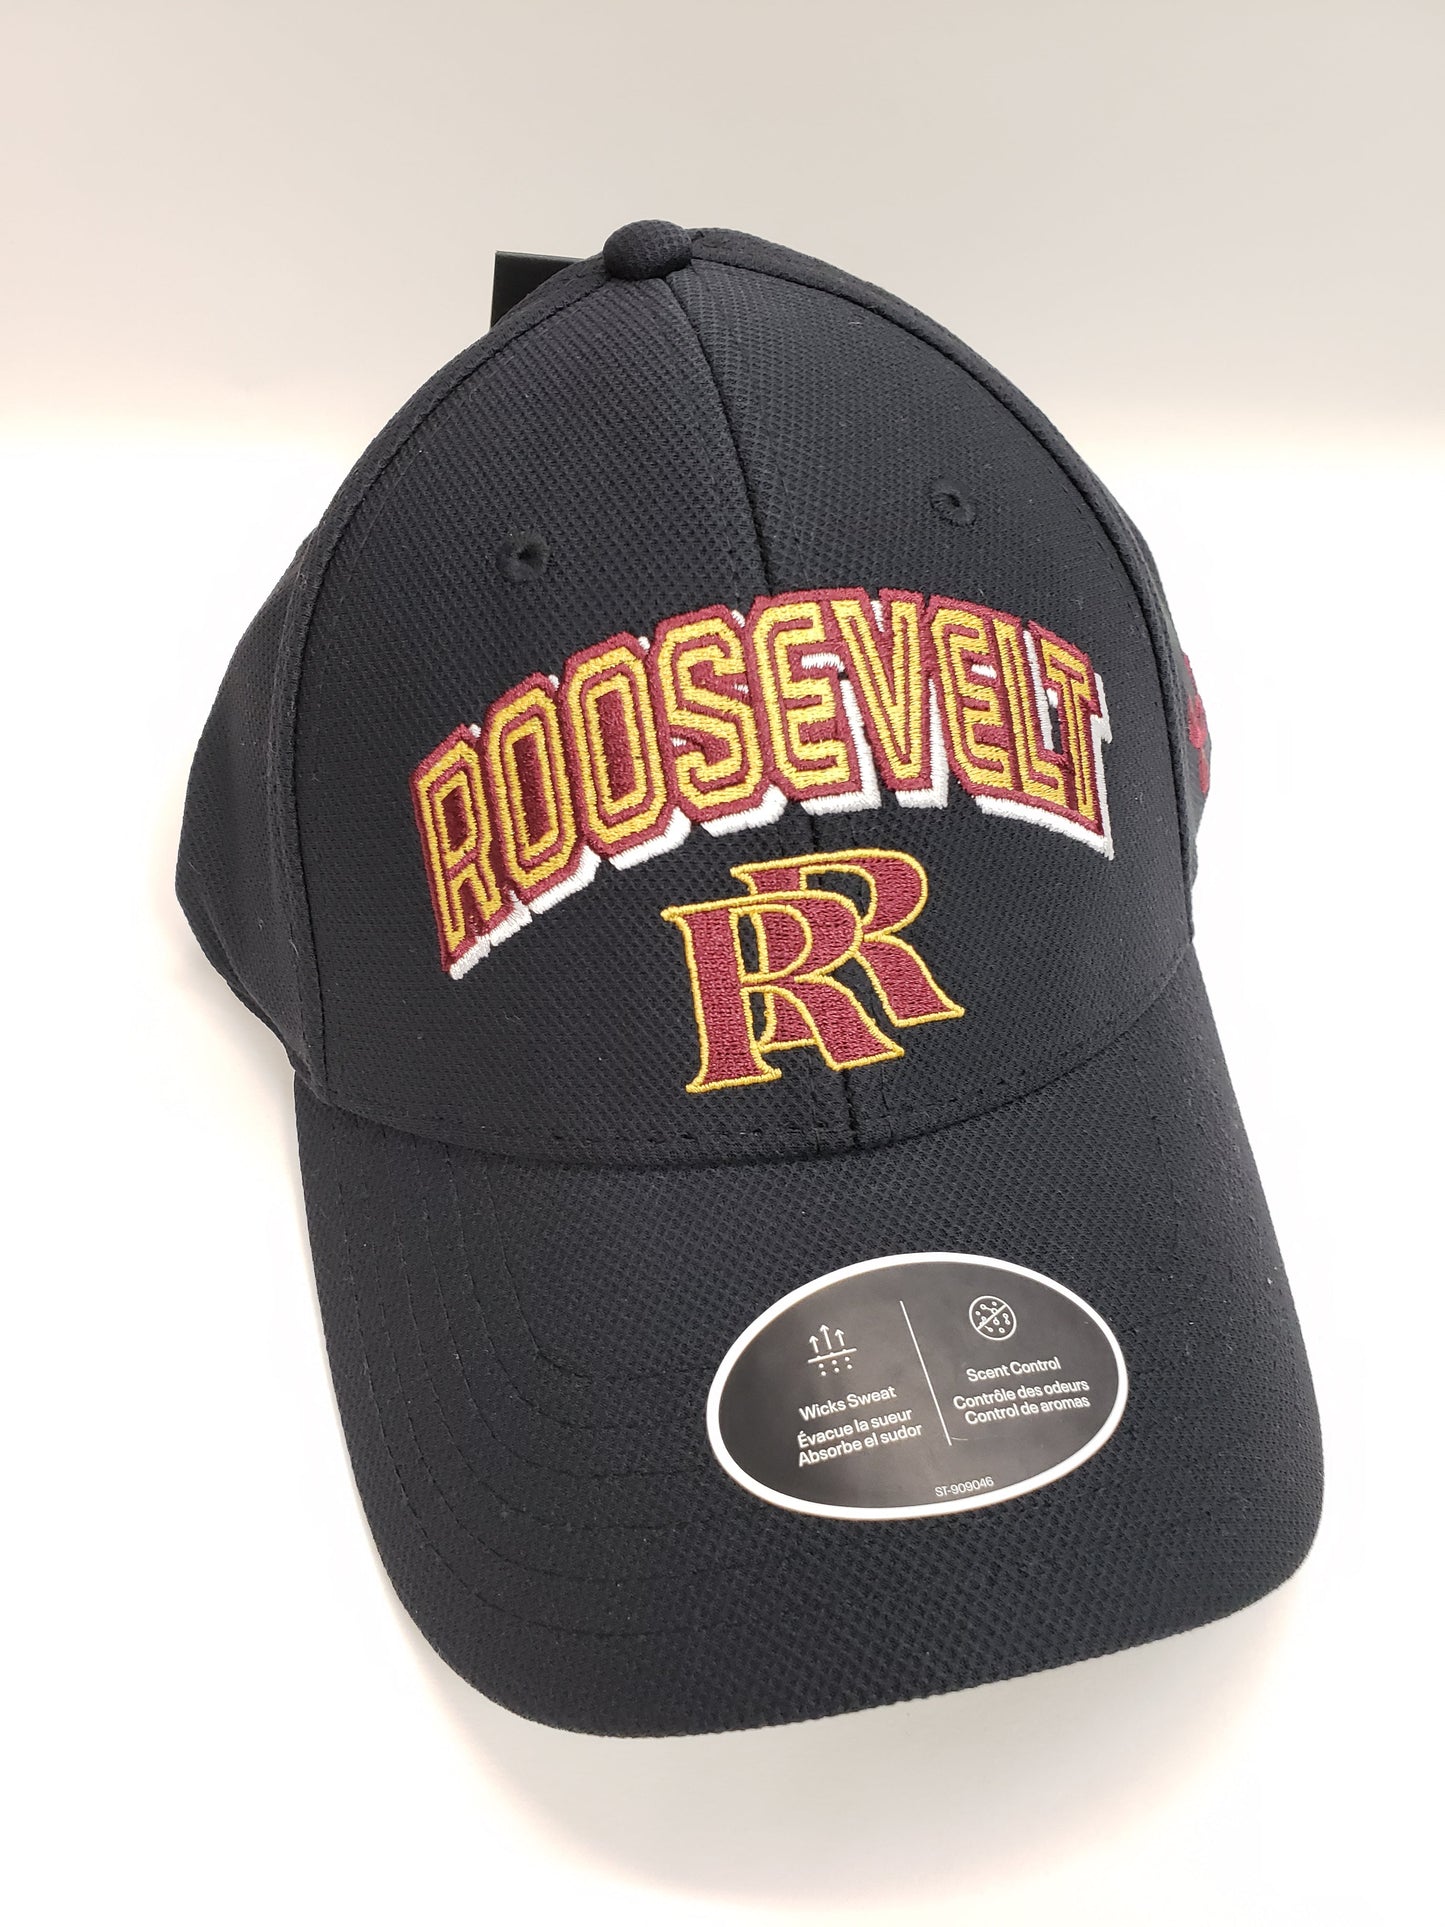 Roosevelt Under Armour Ball Cap